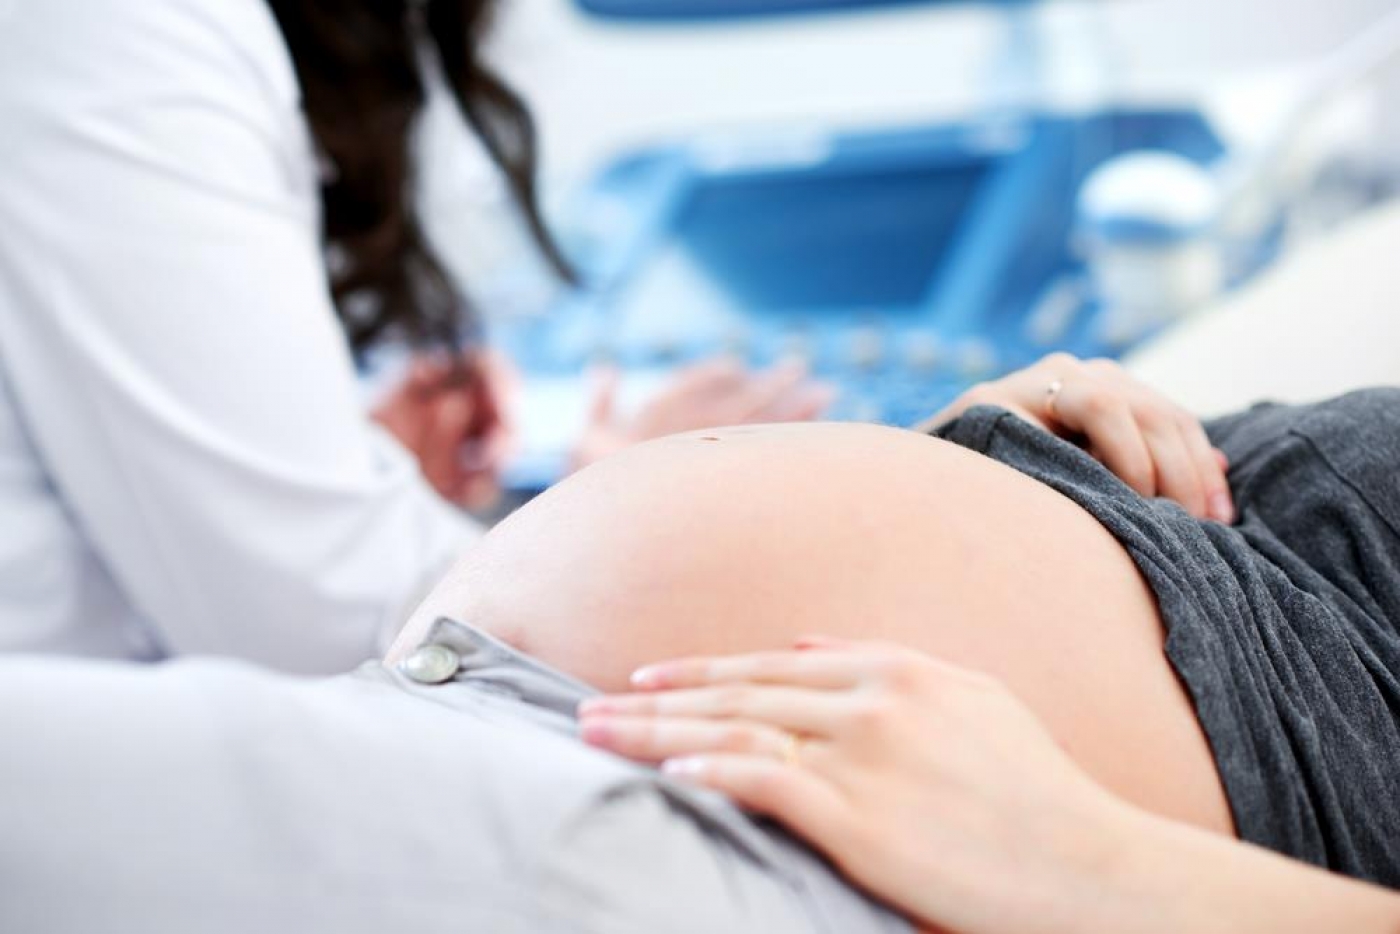 Η εγκυμοσύνη μειώνει προσωρινά τη φωνή μιας γυναίκας – νέα μελέτη